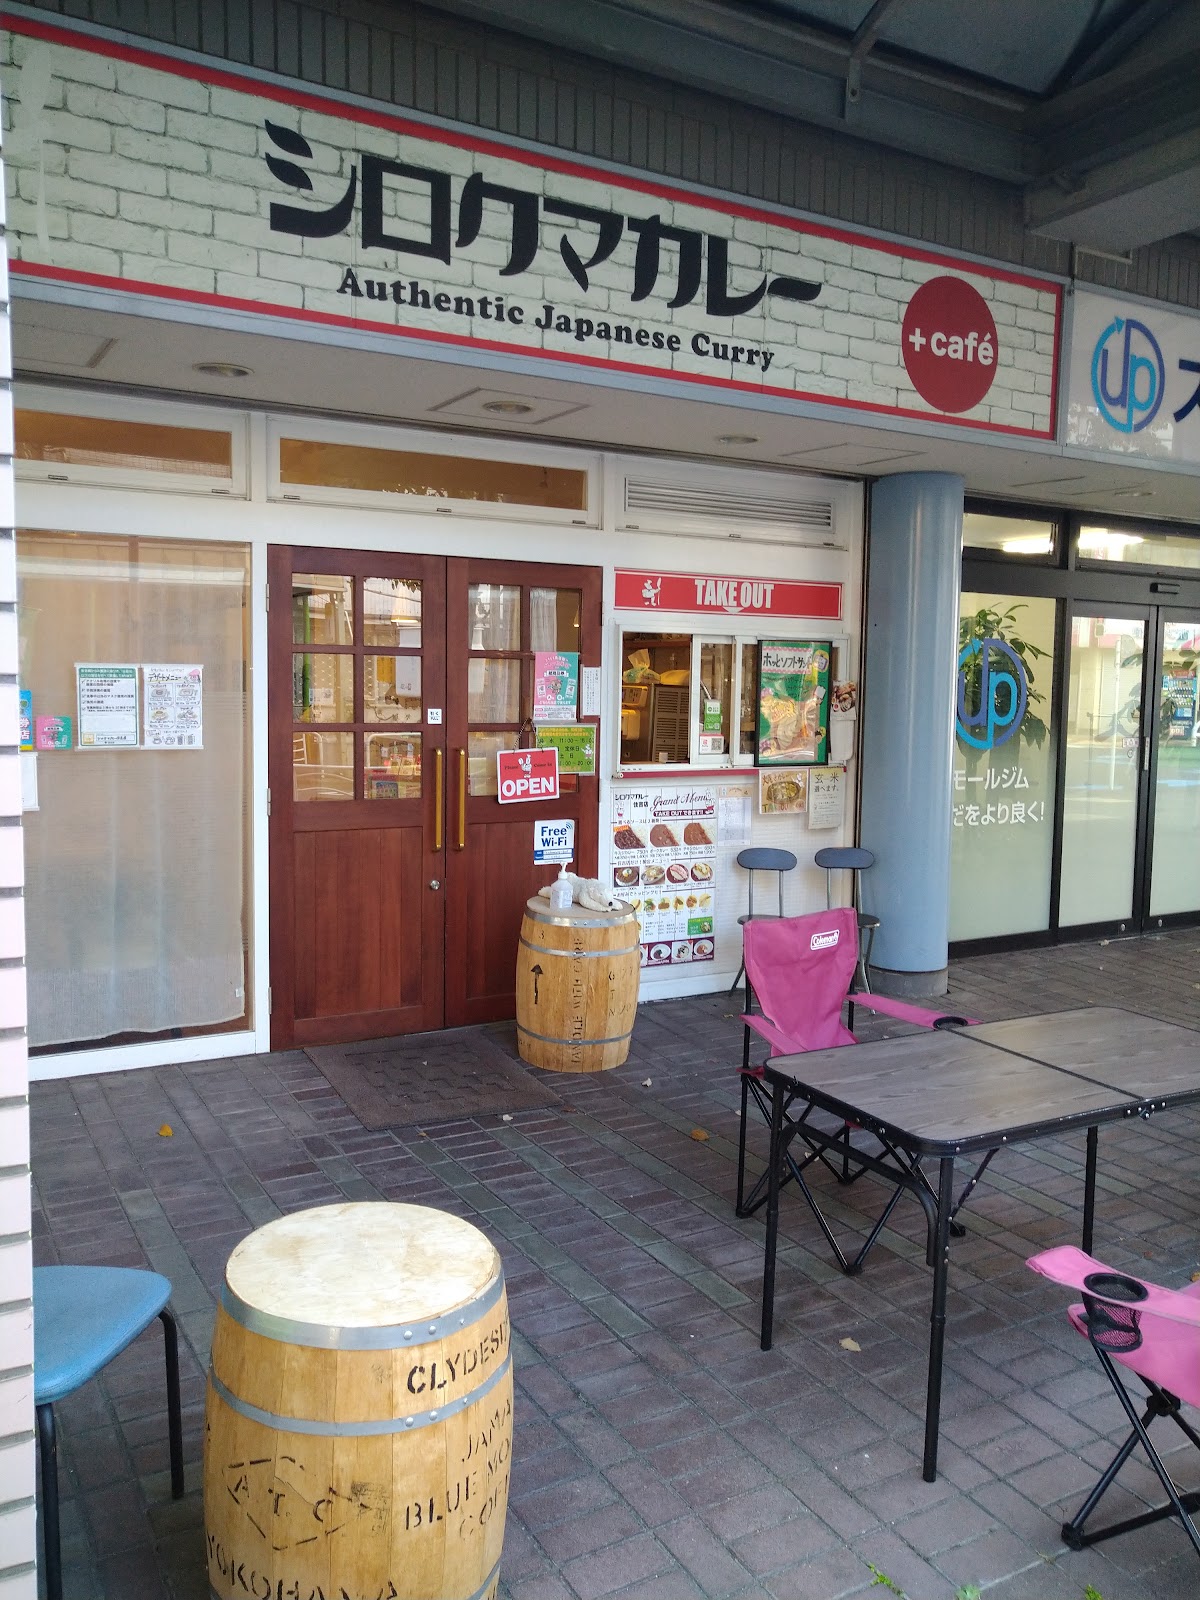 シロクマカレー + cafe 住吉店の写真